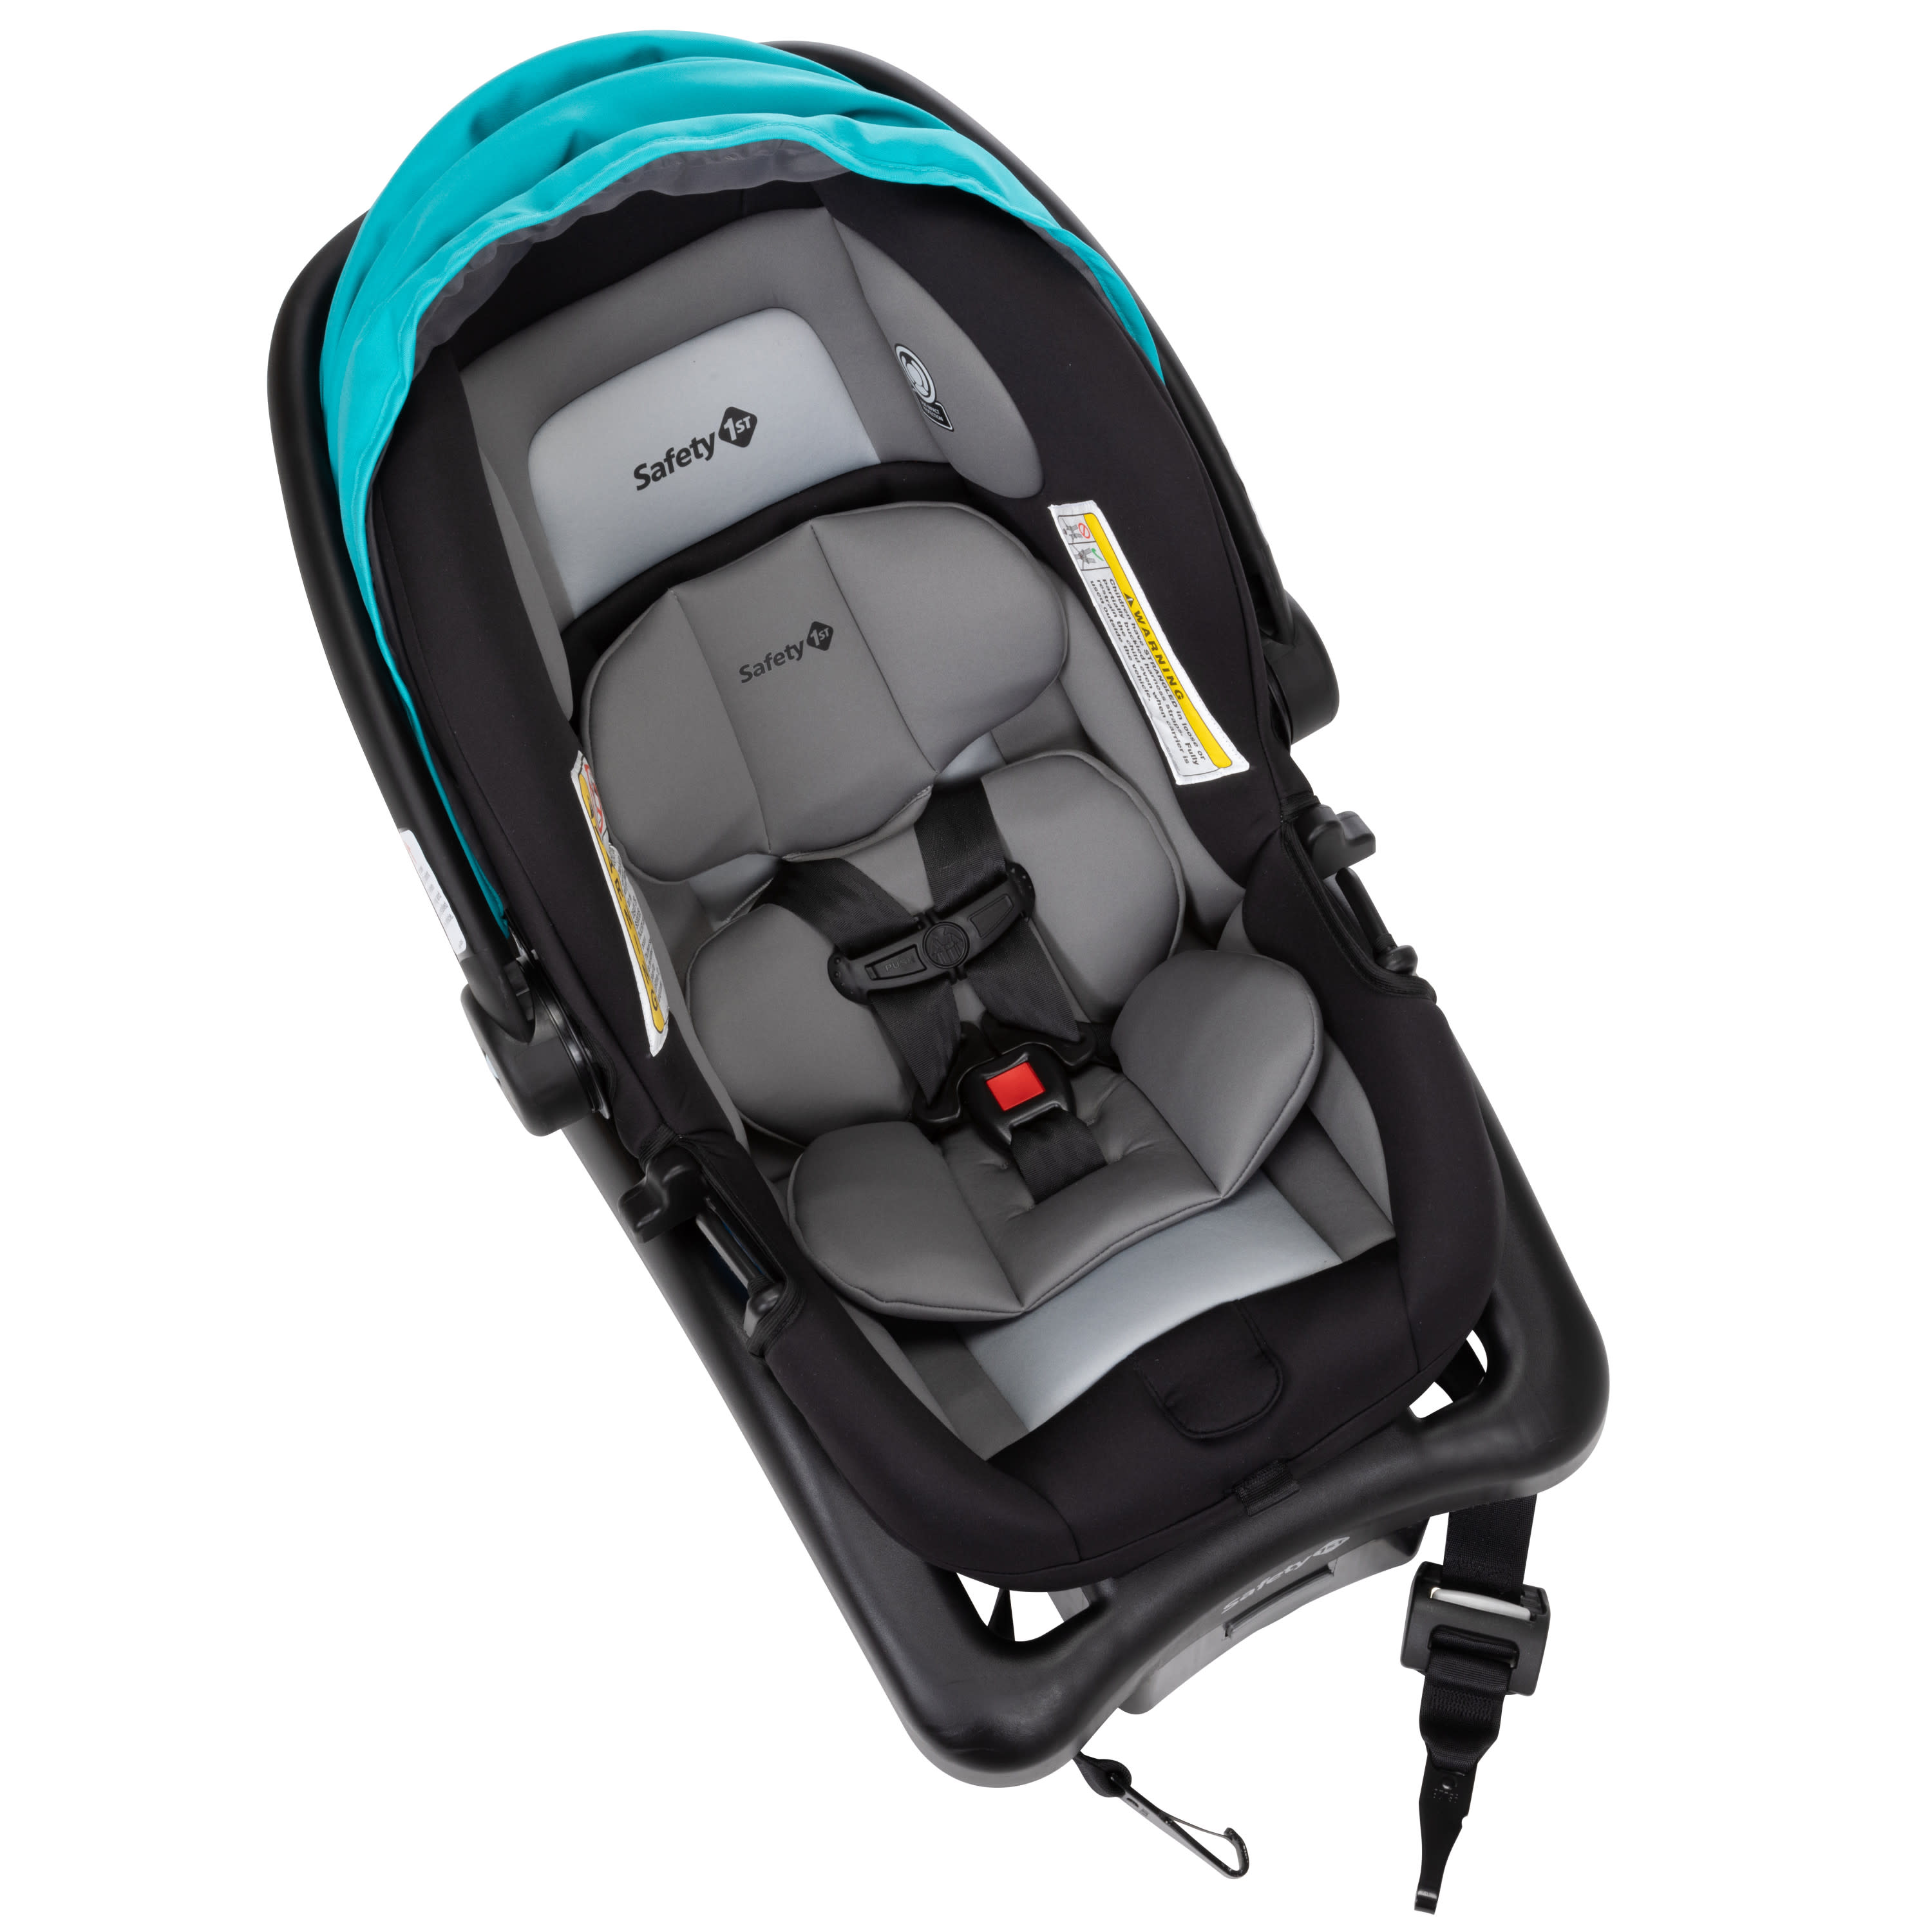 Safety 1ˢᵗ onBoard 35 LT Infant Car Seat, Lake Blue - image 5 of 18